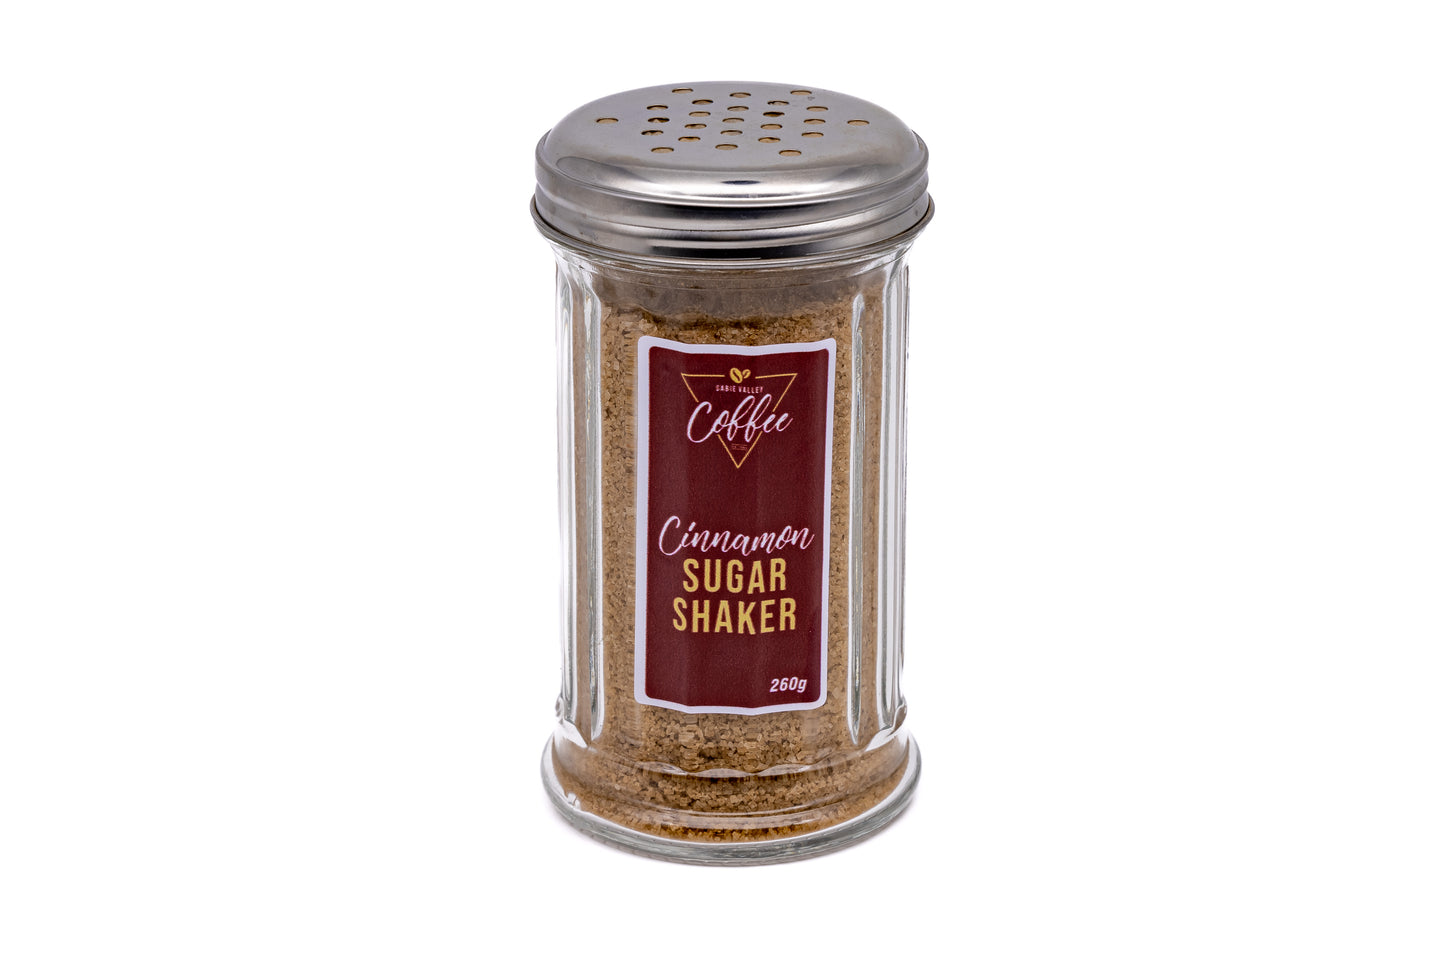 Cinnamon Sugar Shaker